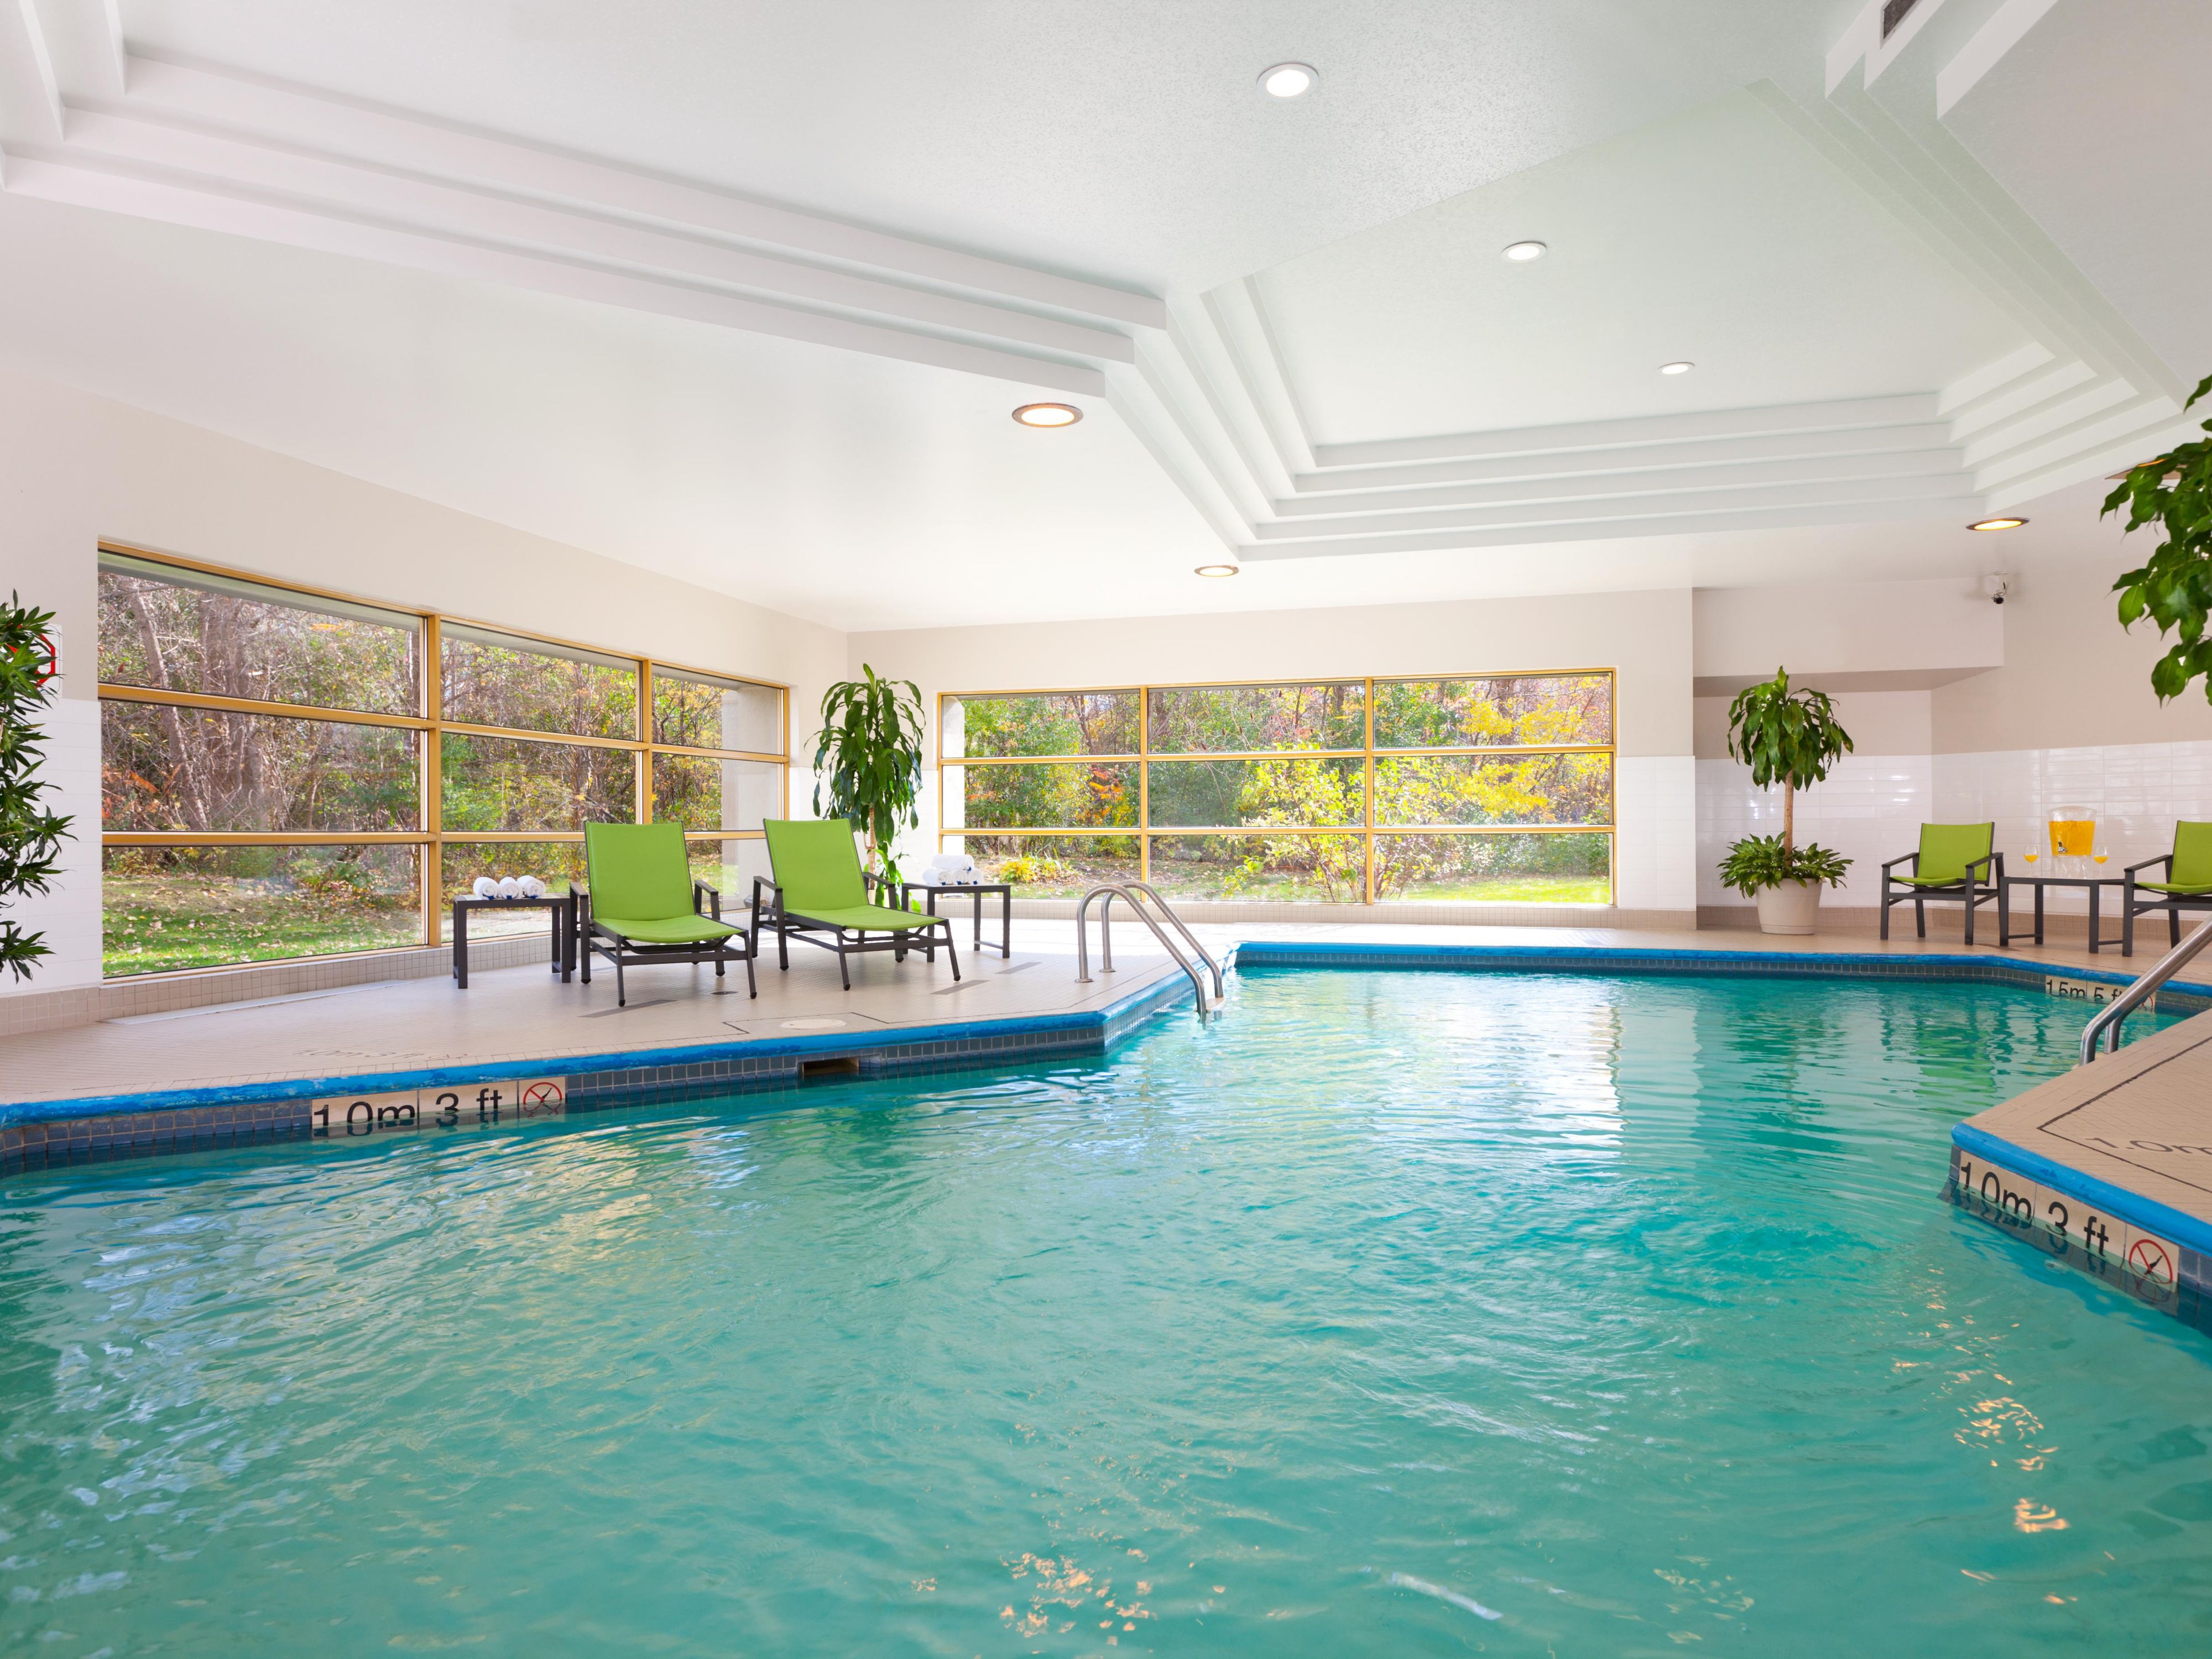 Venez profiter des bienfaits de notre salle d'exercices et de notre piscine intérieure pour vous ressourcer le corps et l'esprit. Au plaisir de vous accueillir prochainement!